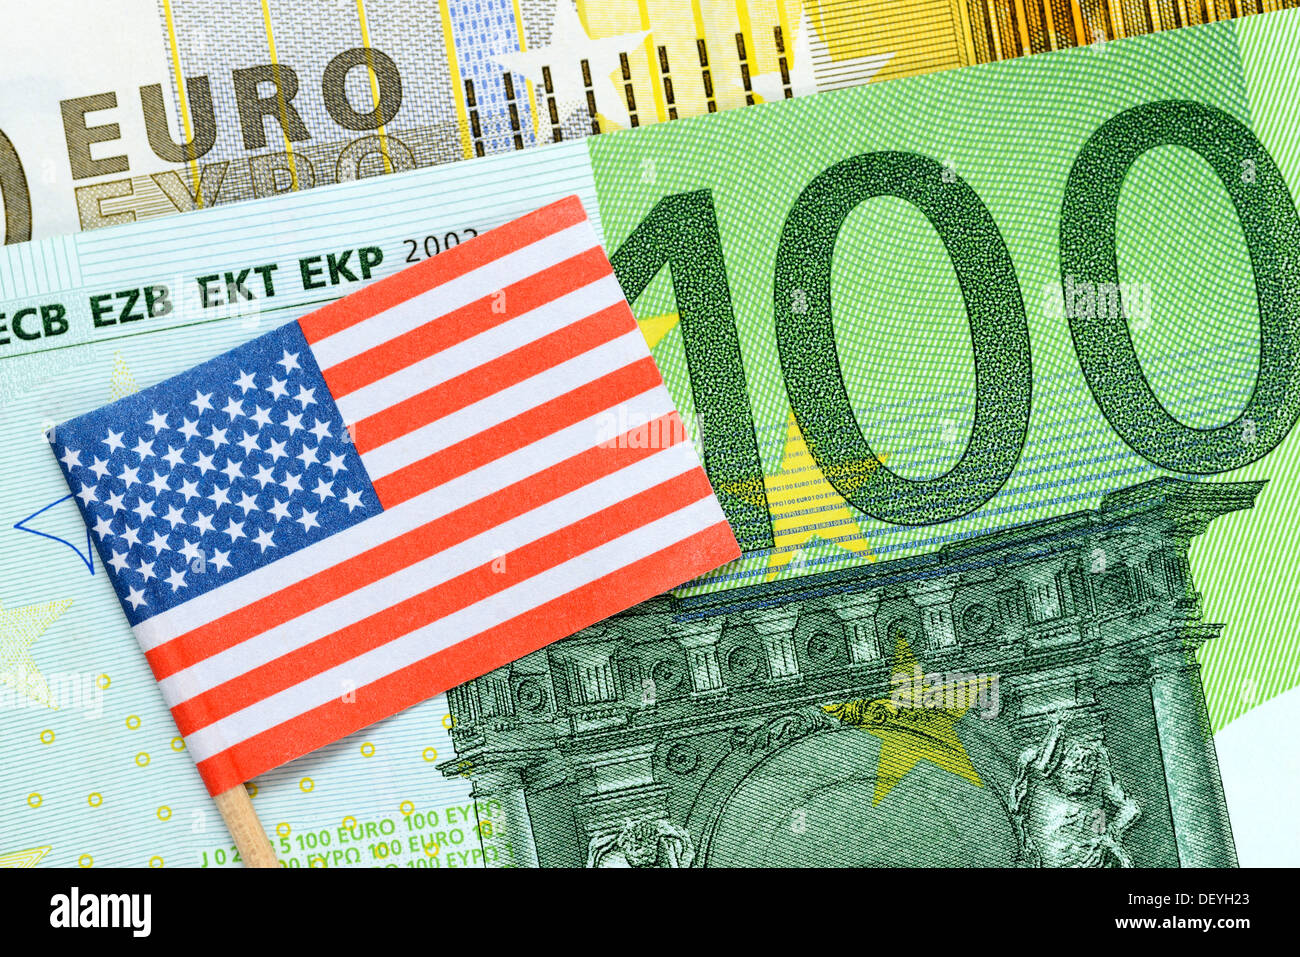 Pavillon des USA sur un euro symbolique, photo zone de commerce extérieur entre les USA et l'UE Banque D'Images